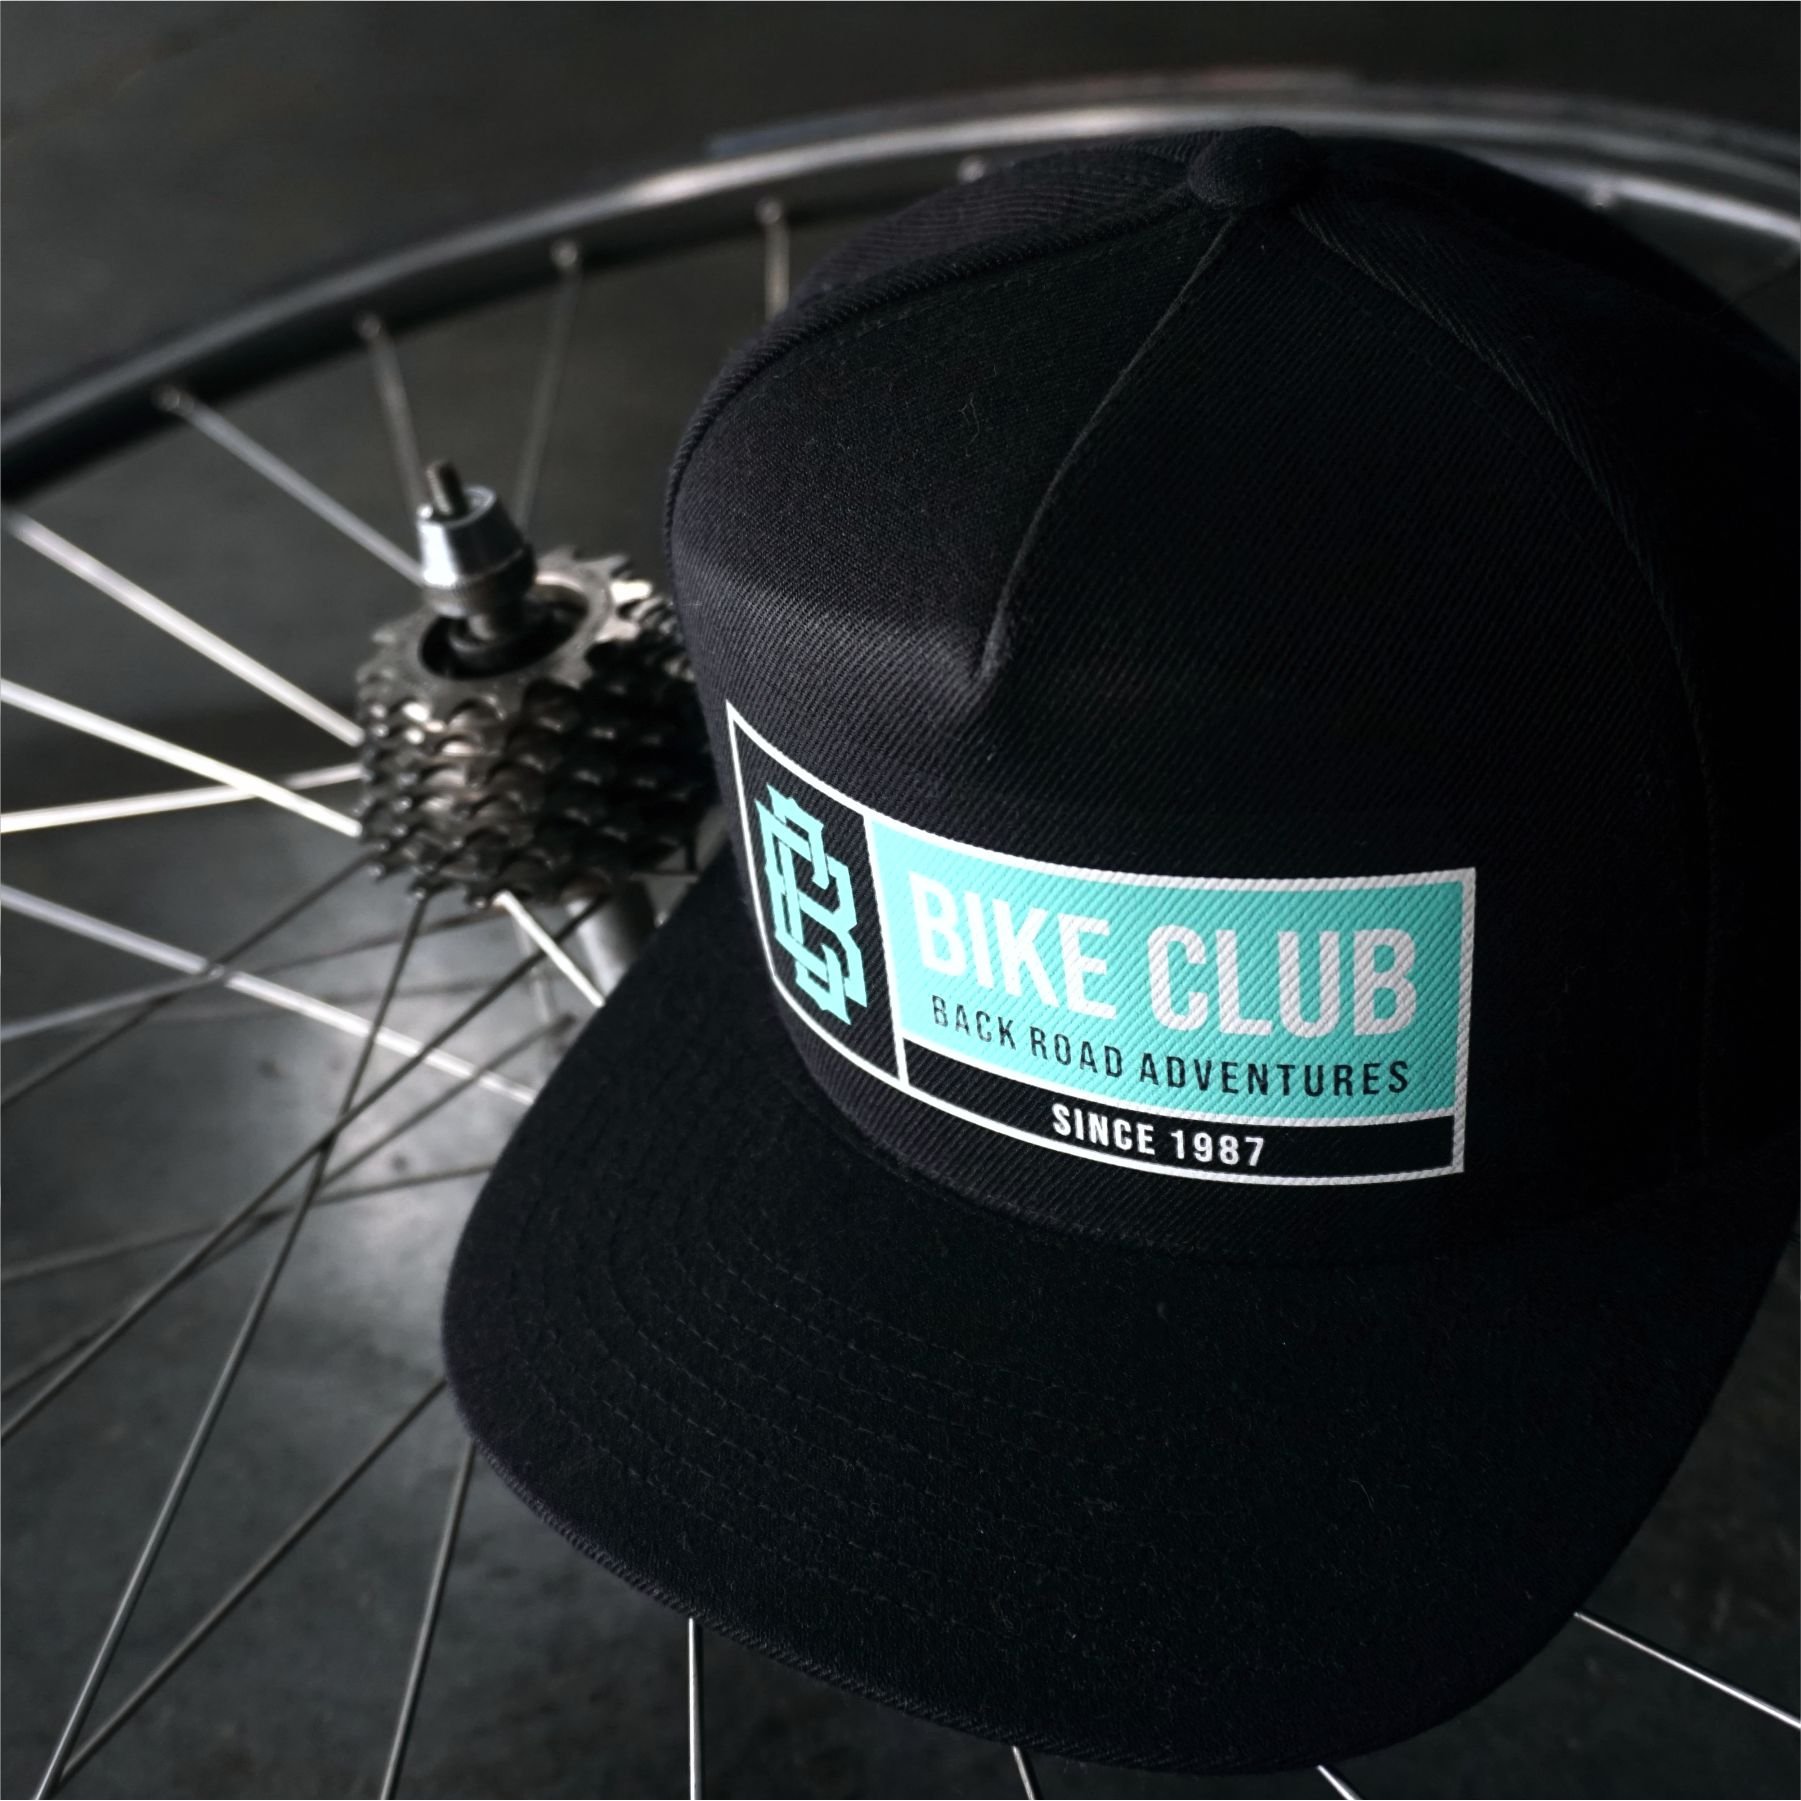 Bike Club.jpg